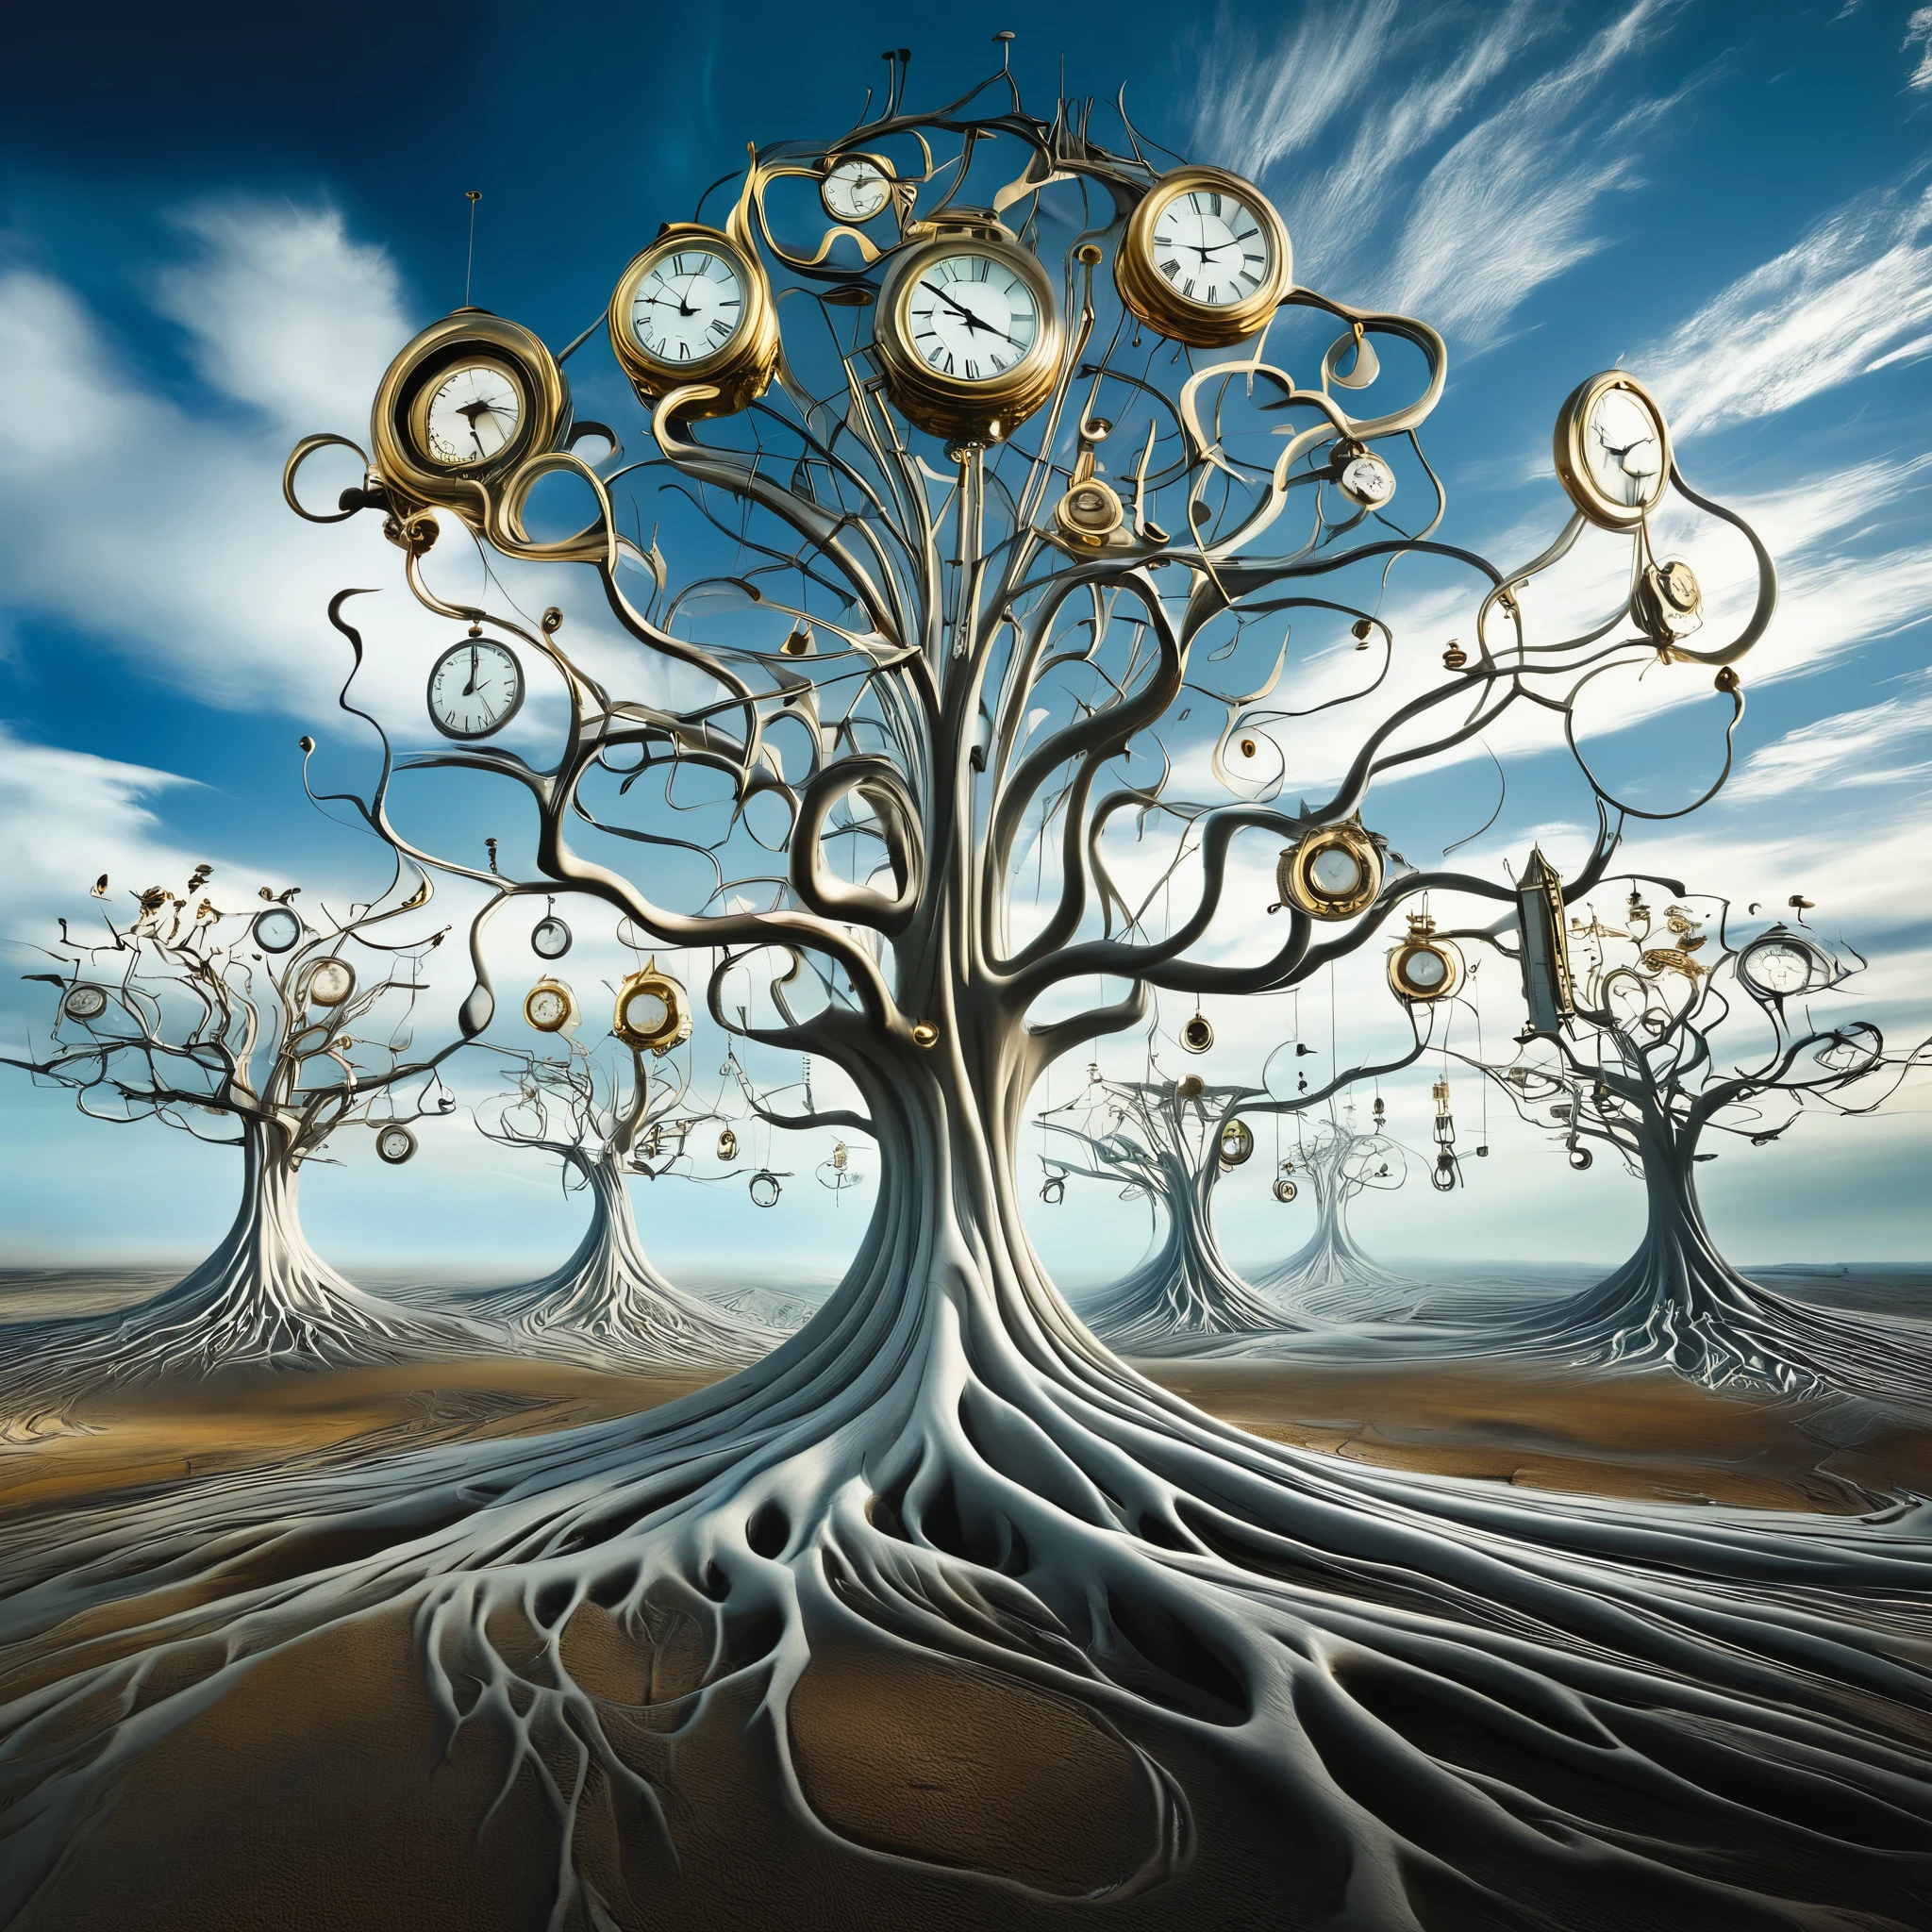 сюрреалистический, Пейзаж, вдохновленный Сальвадором Дали, с тающими часами, нависшими над бесплодными деревьями и плавающими в огромном пространстве., Бесконечное небо. Часы символизируют циклическую природу времени., с их искаженными формами, символизирующими текучесть восприятия.